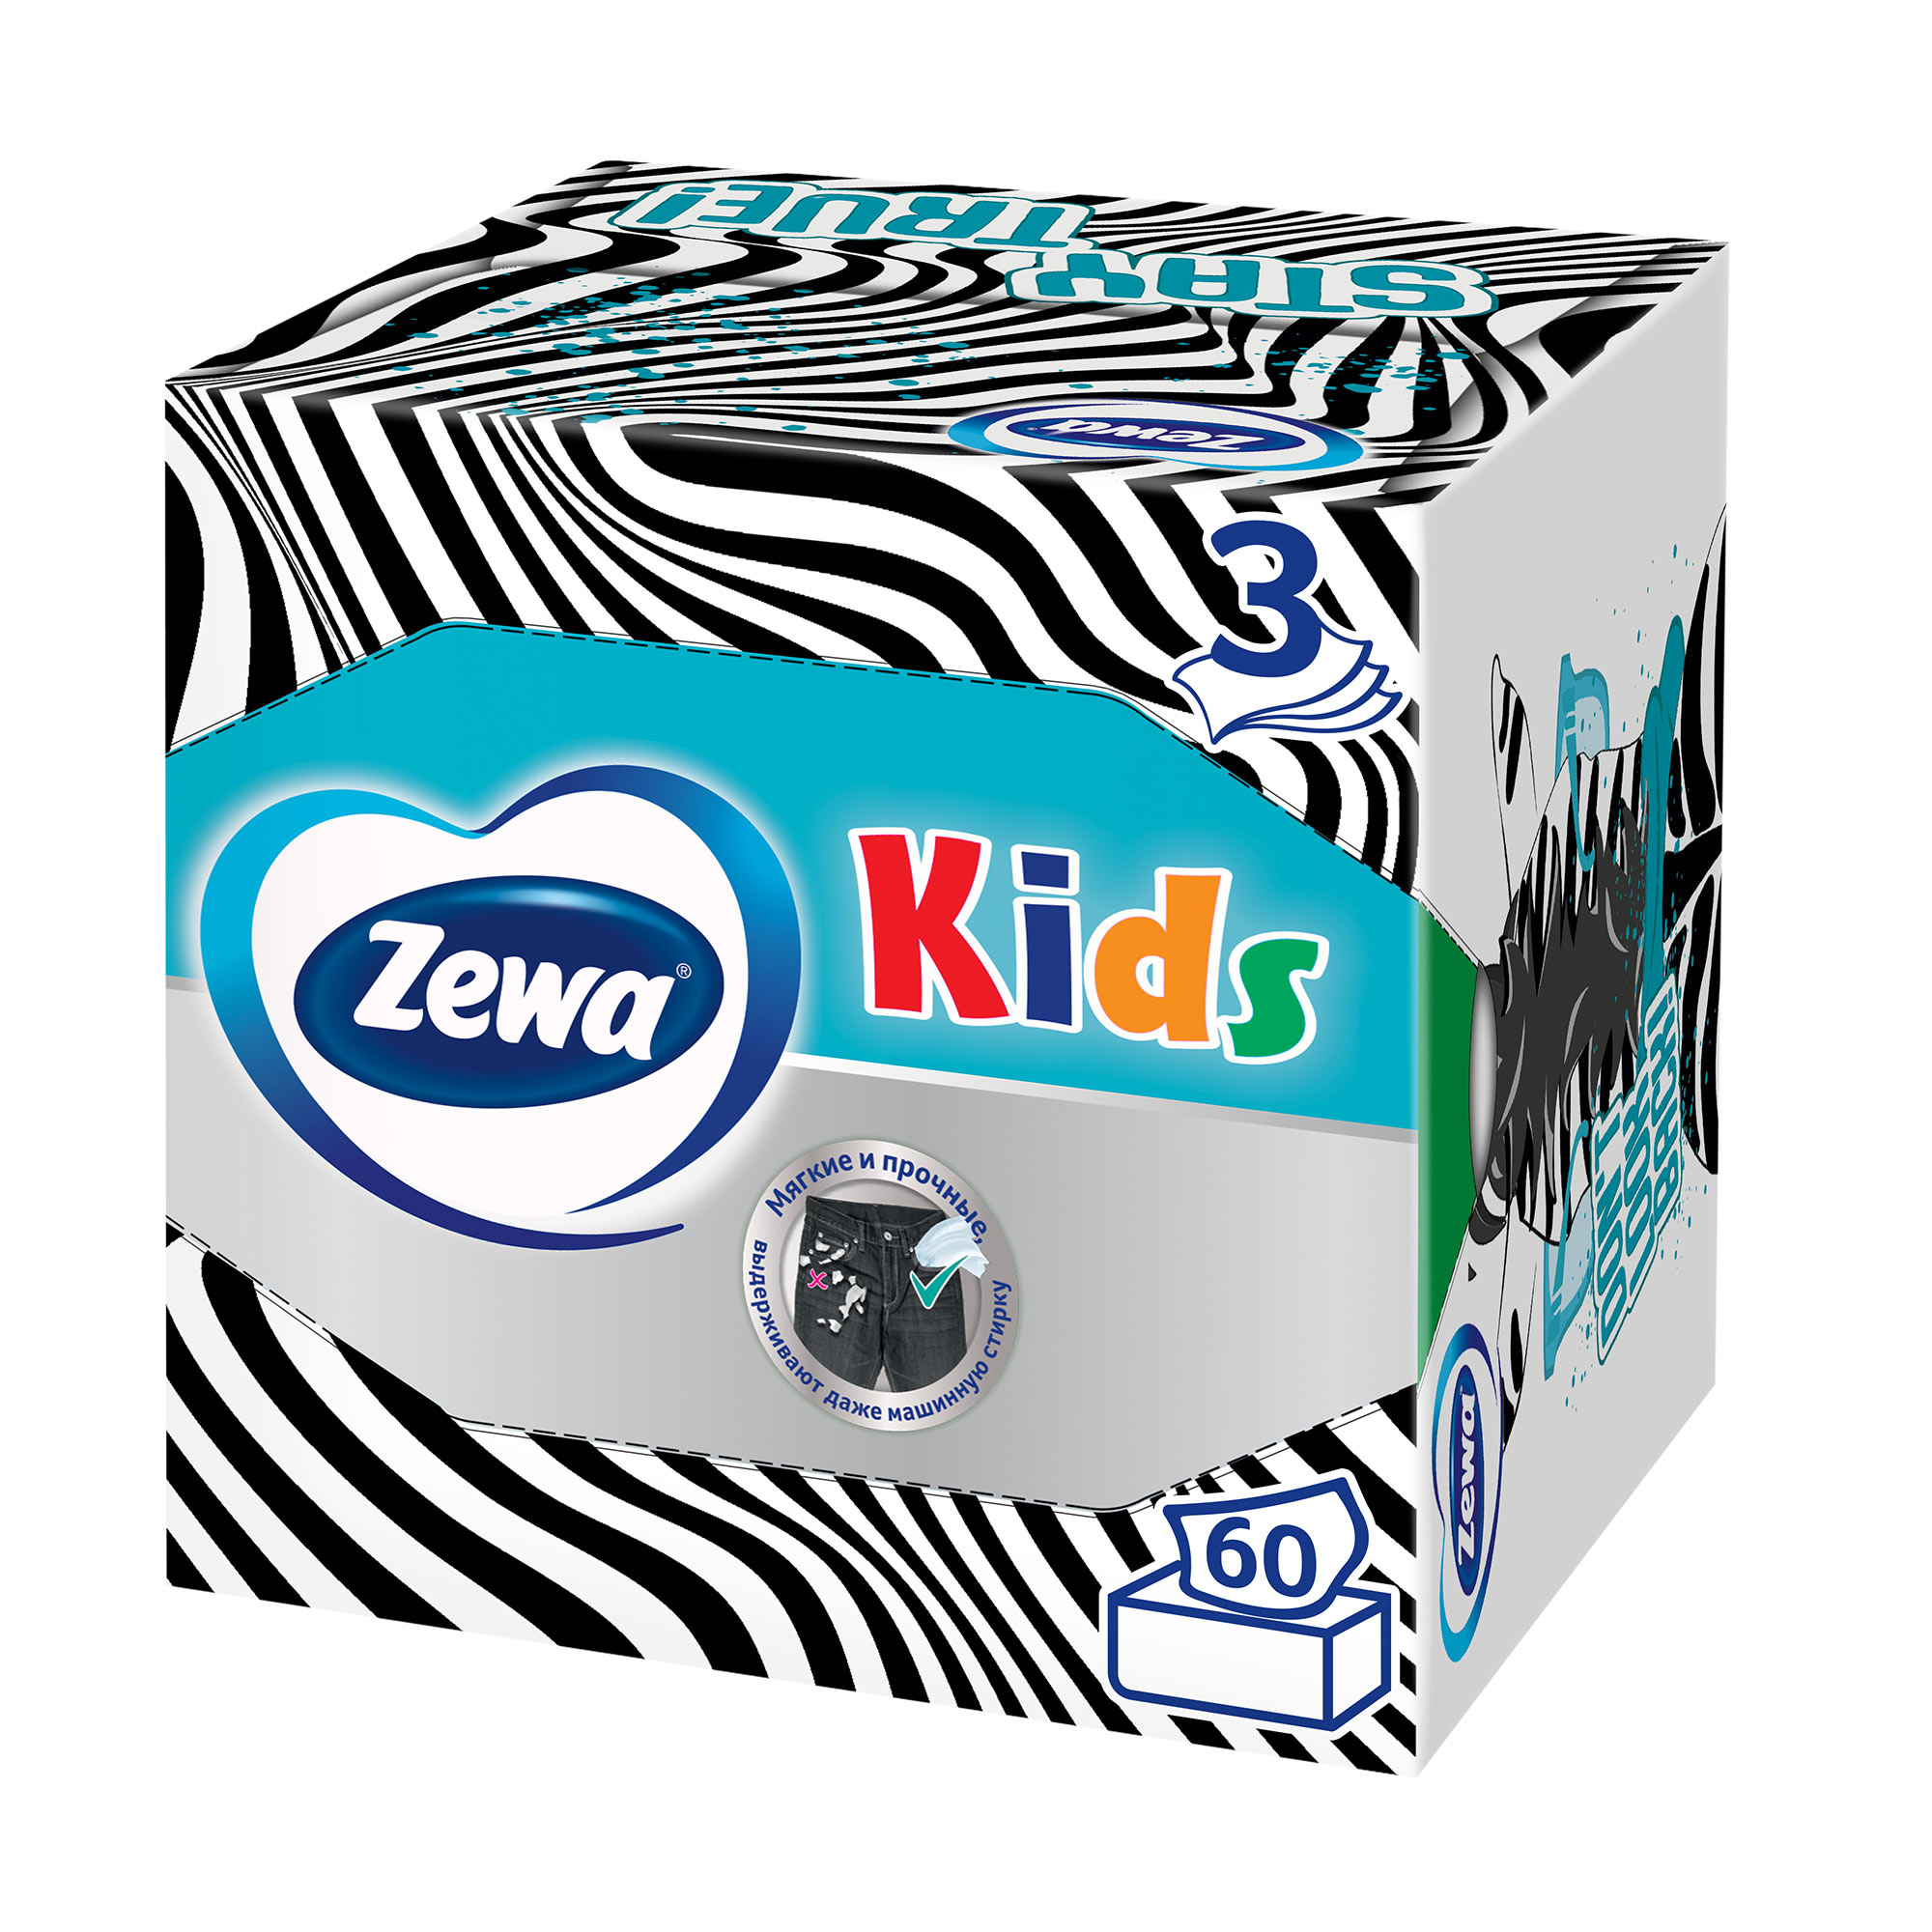 салфетки бумажные в коробке zewa deluxe арома коллекция 3 слоя 60 шт Детские Салфетки бумажные Zewa Kids, 3 слоя, 60 шт.